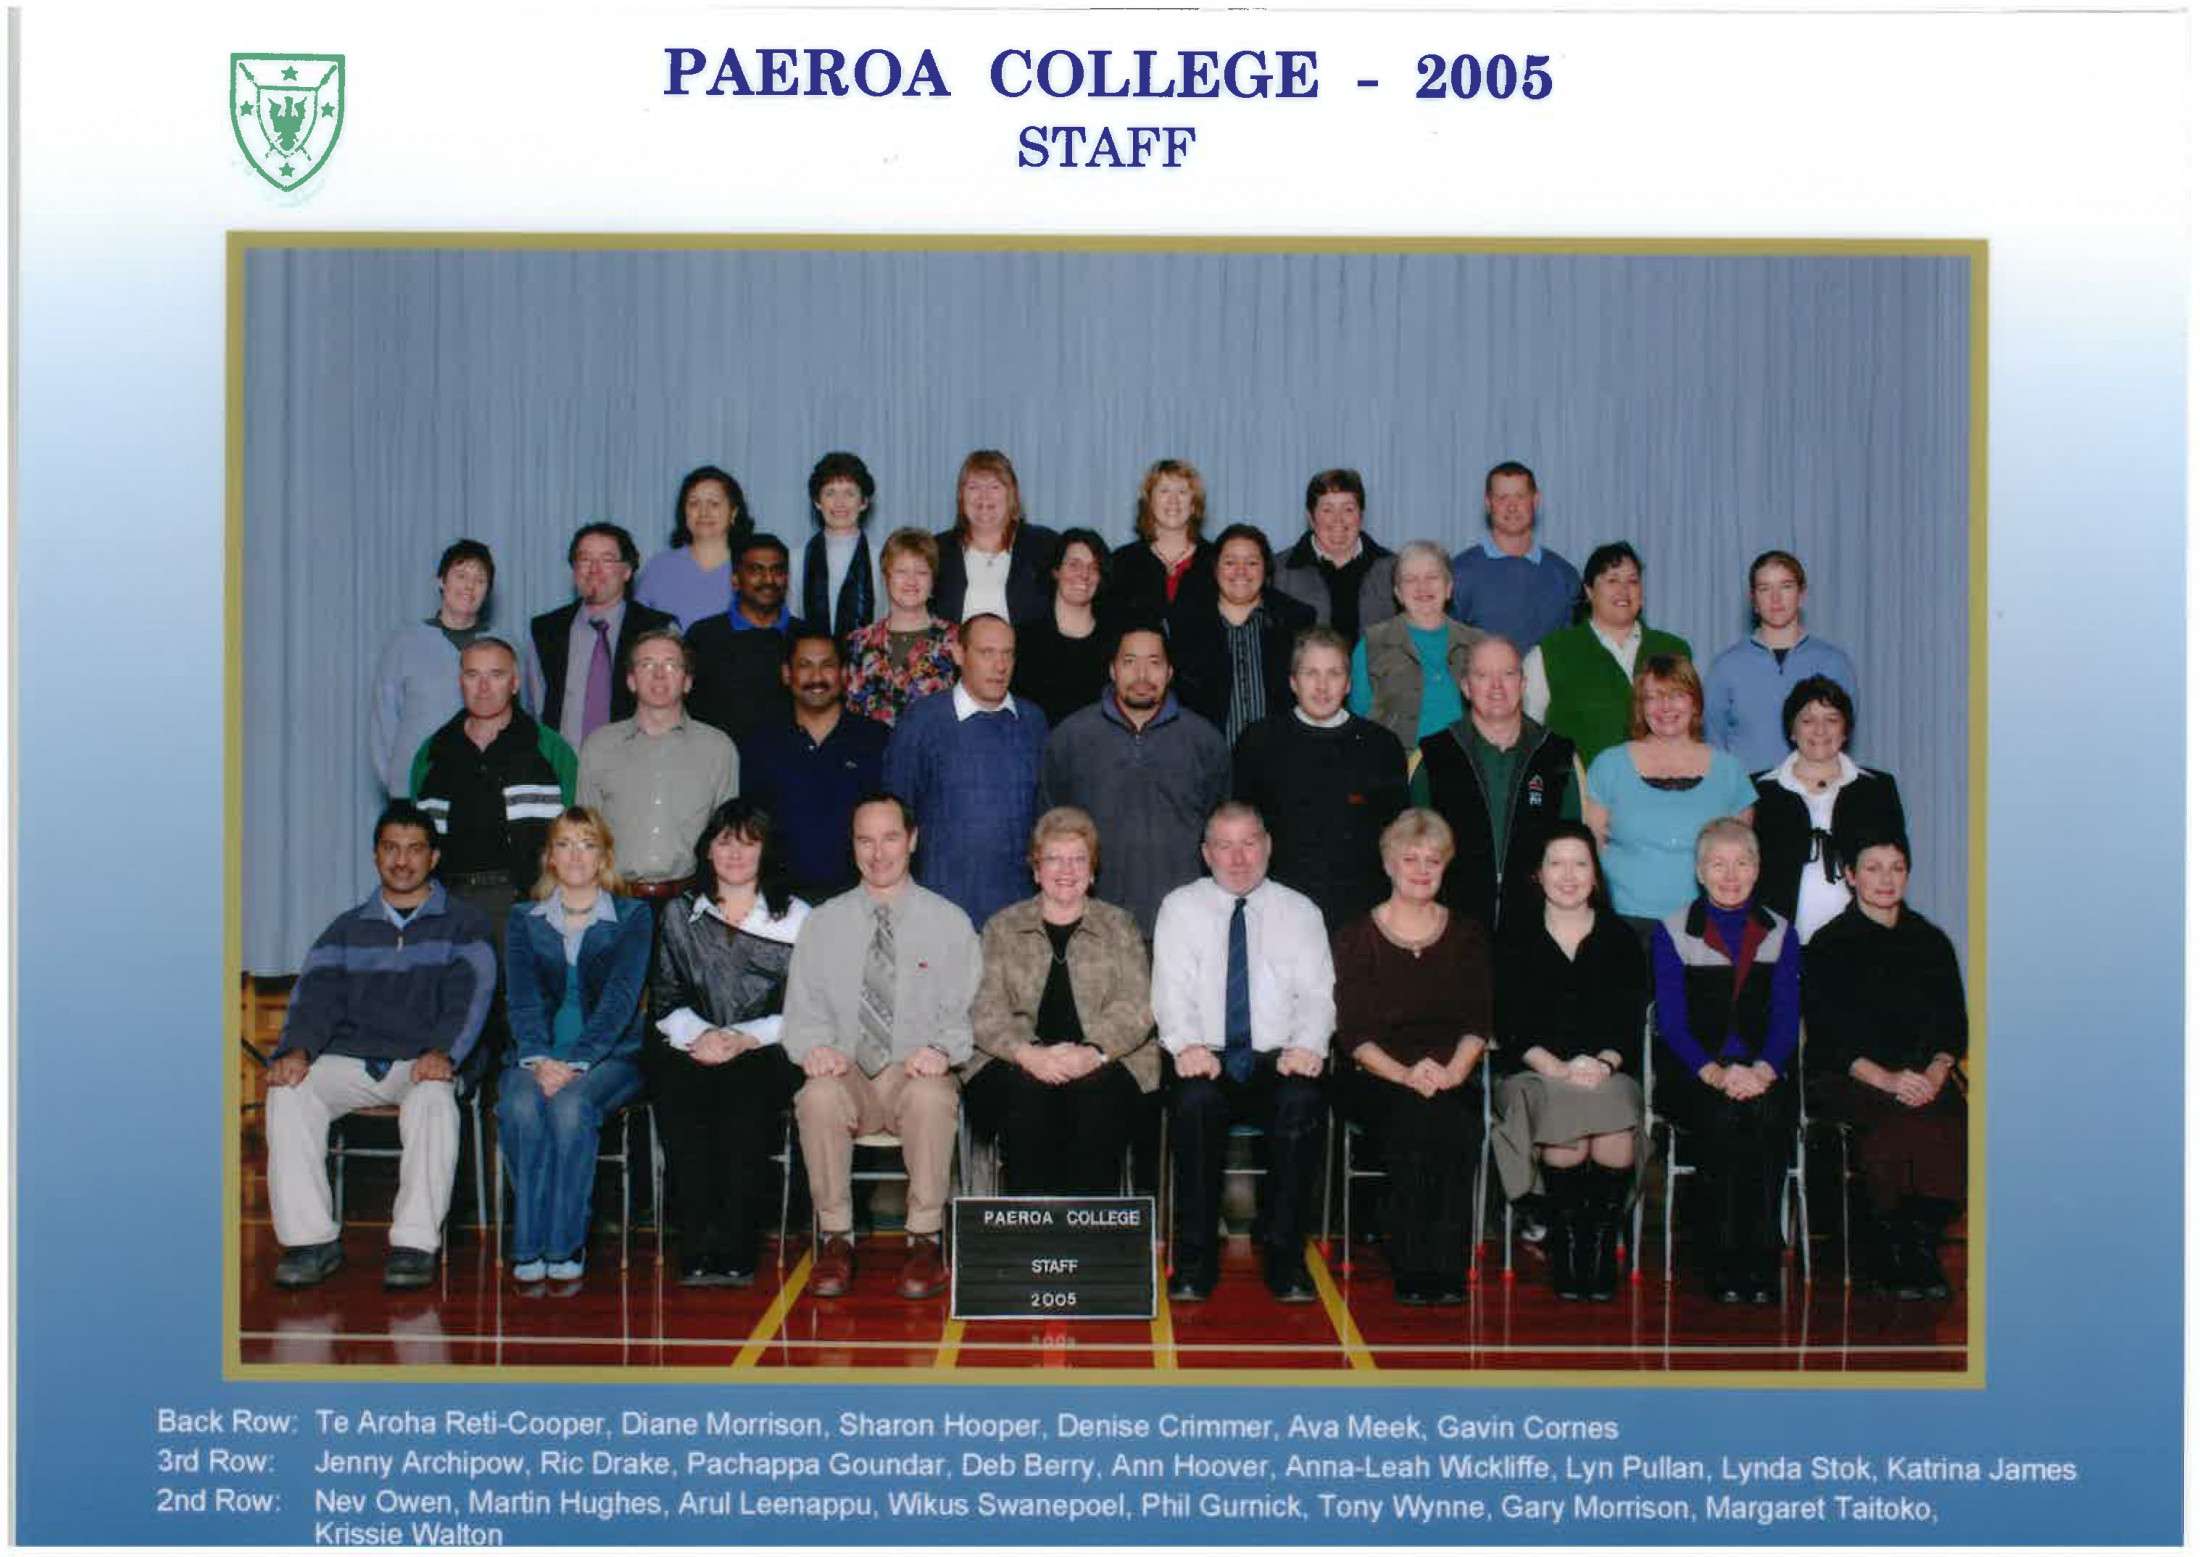 2005 Staff